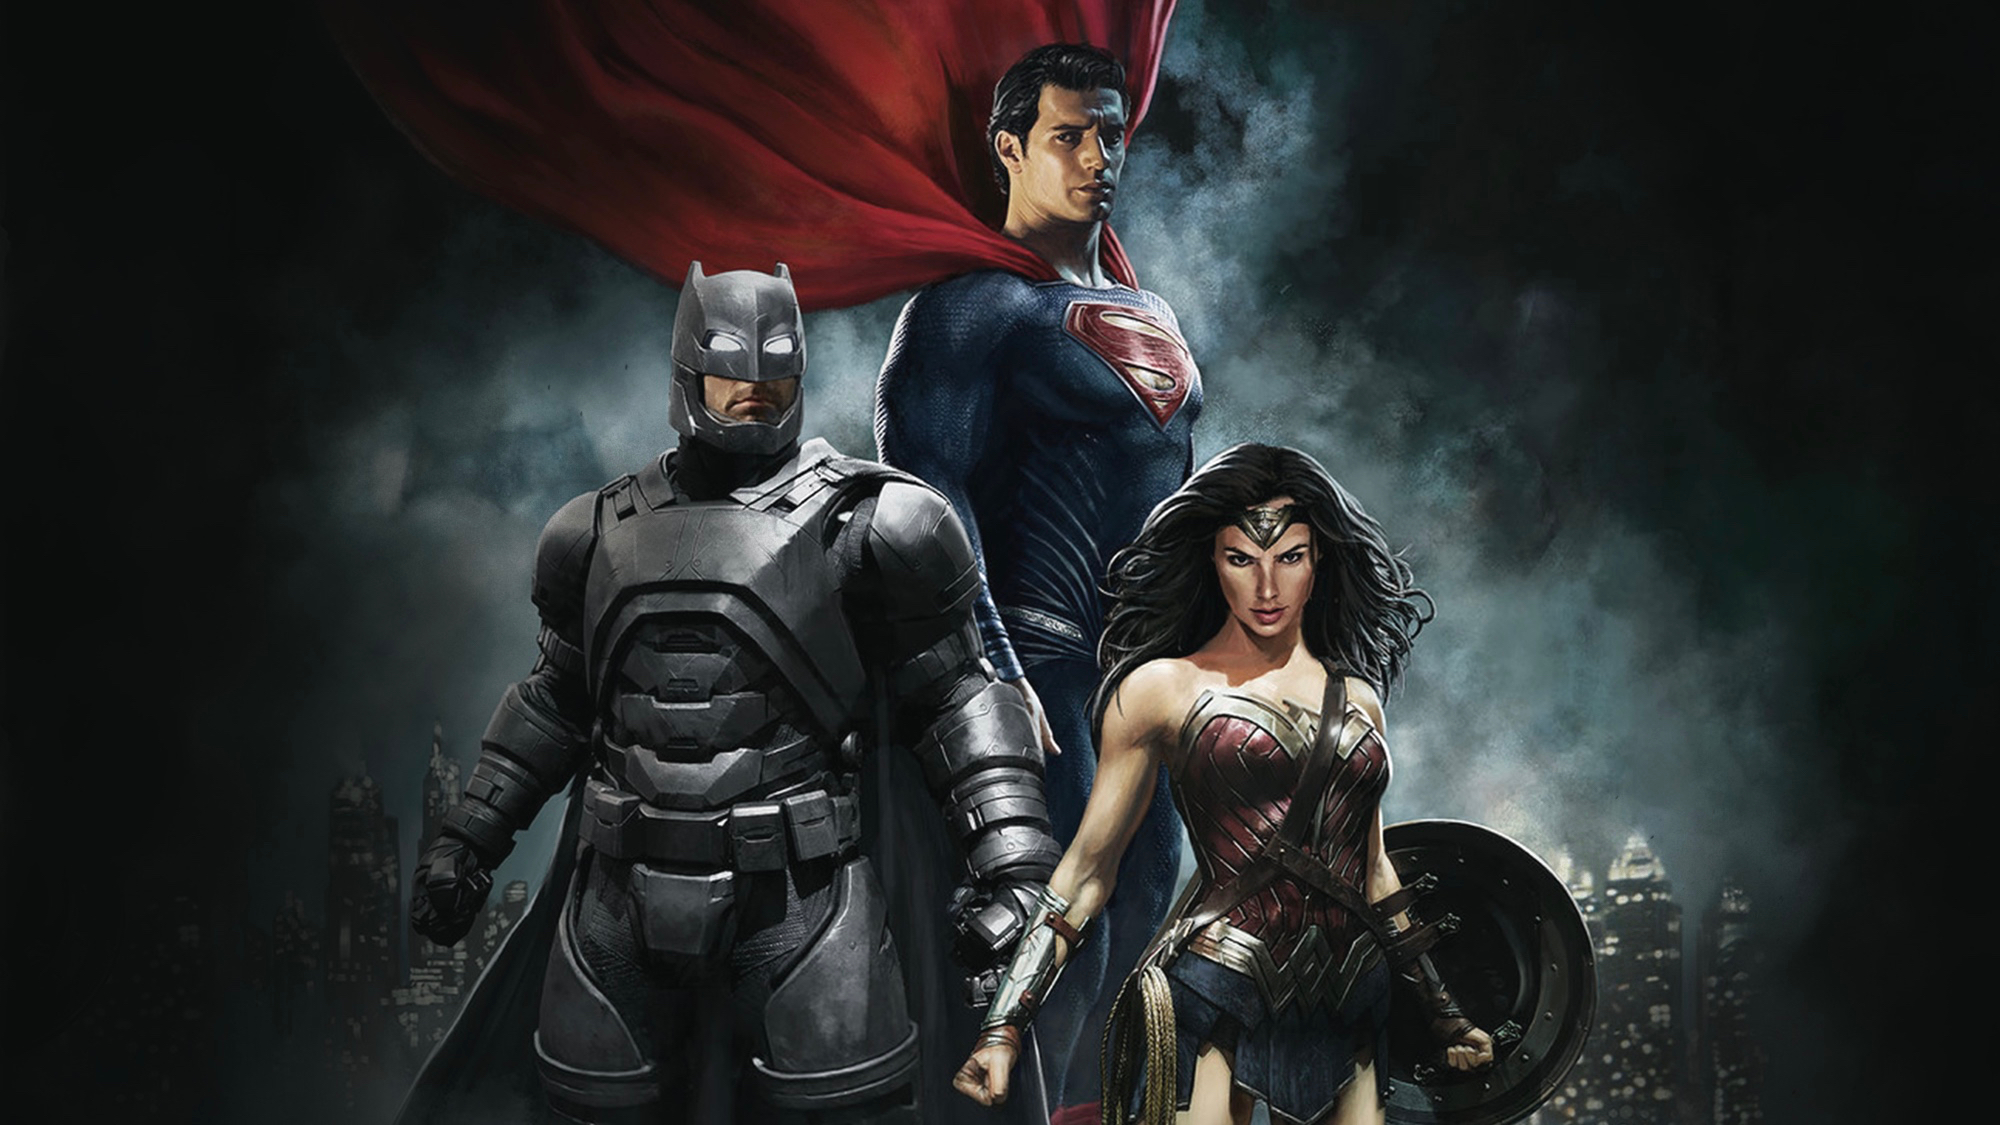 Descarga gratuita de fondo de pantalla para móvil de Superhombre, Películas, Hombre Murciélago, La Mujer Maravilla, Gal Gadot, Henry Cavill, Batman V Superman: El Amanecer De La Justicia.